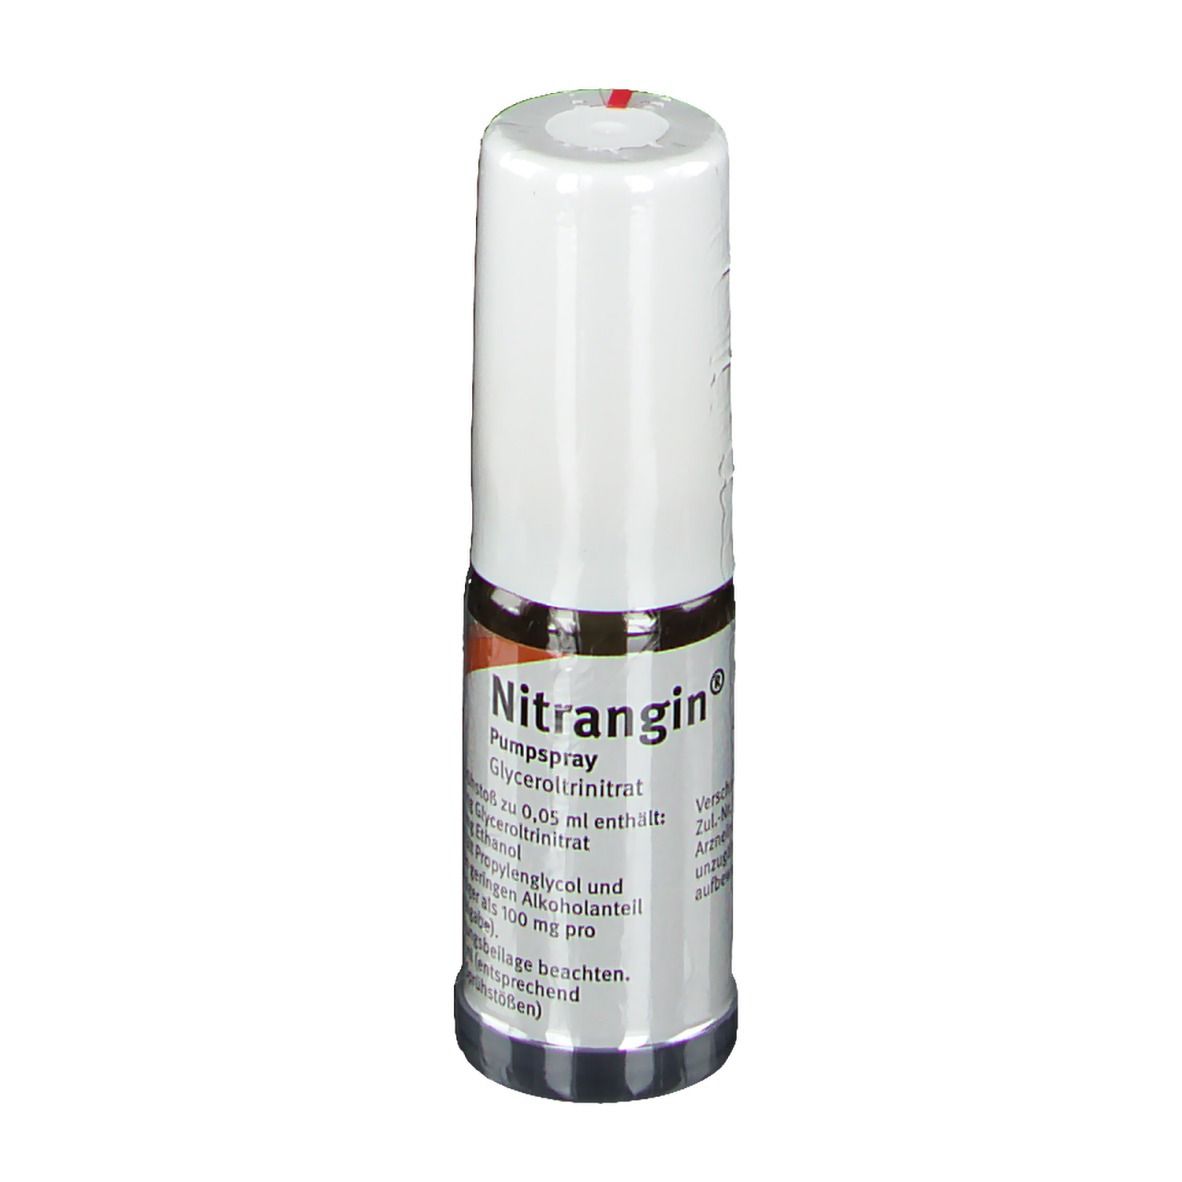 Nitrangin Pumpspray